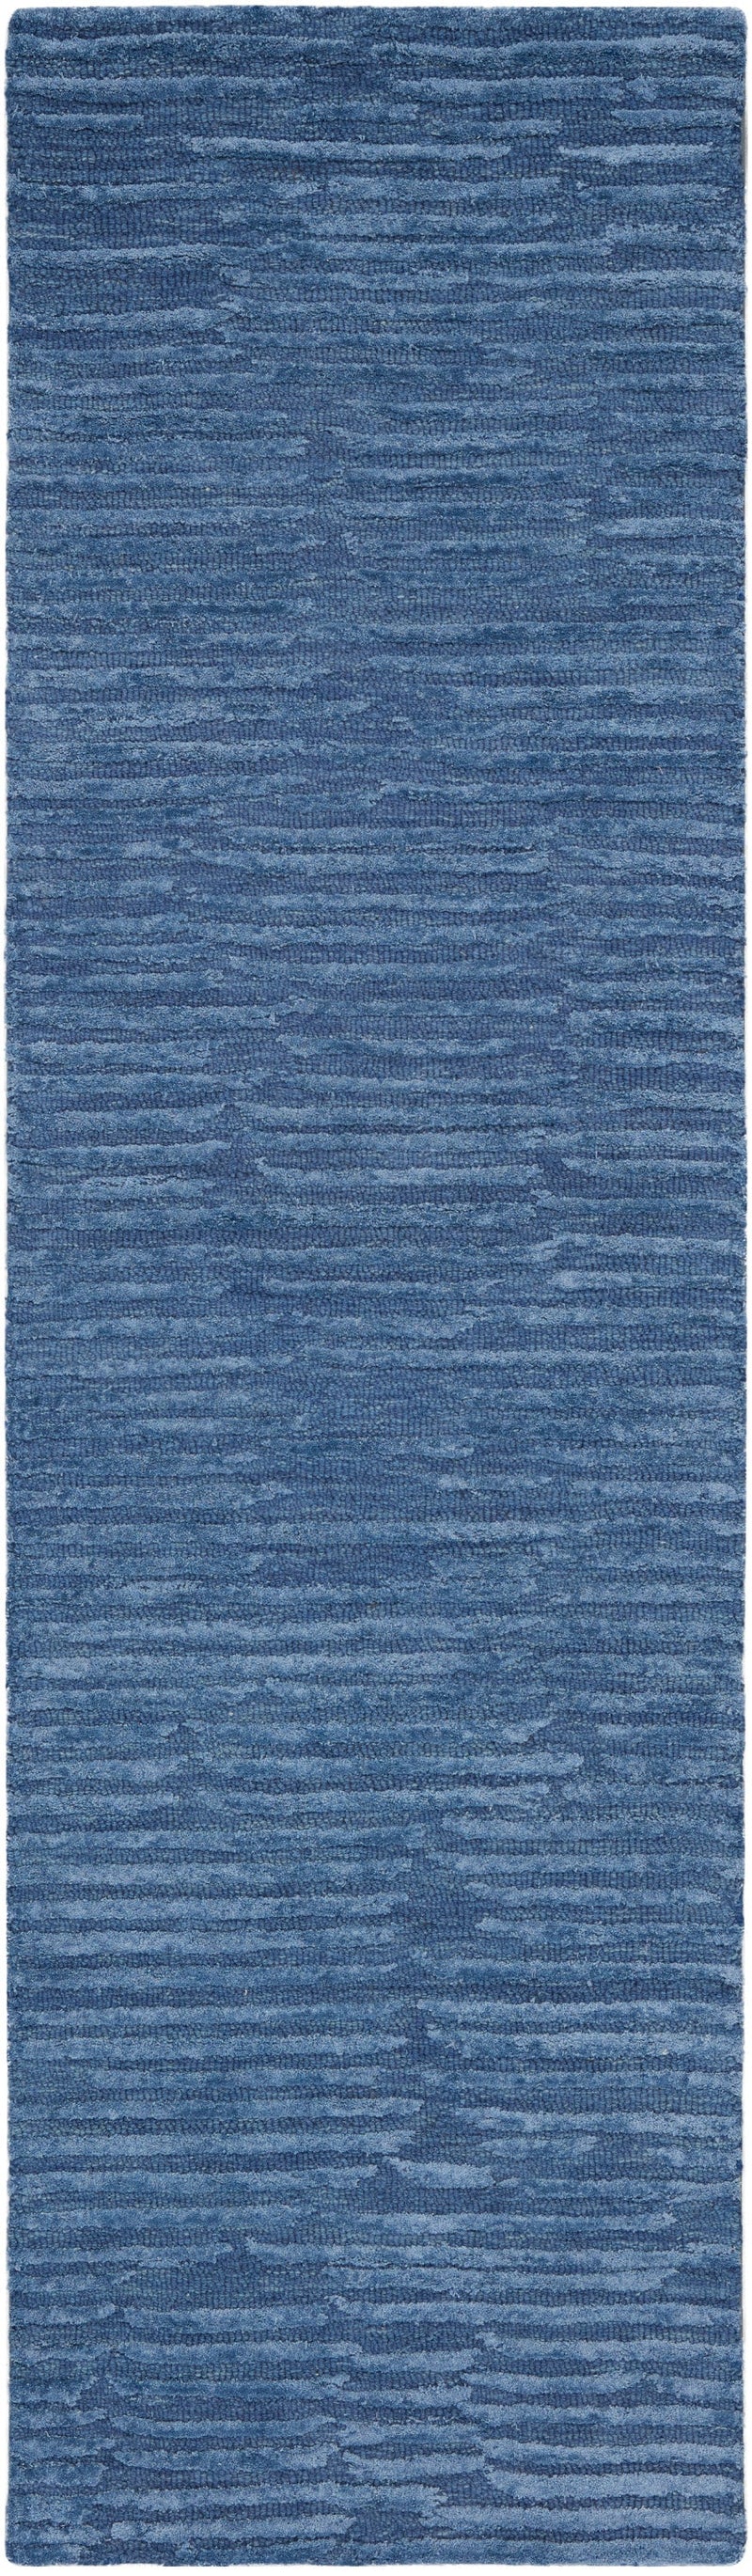 media image for ck010 linear handmade blue rug by nourison 99446880116 redo 2 230